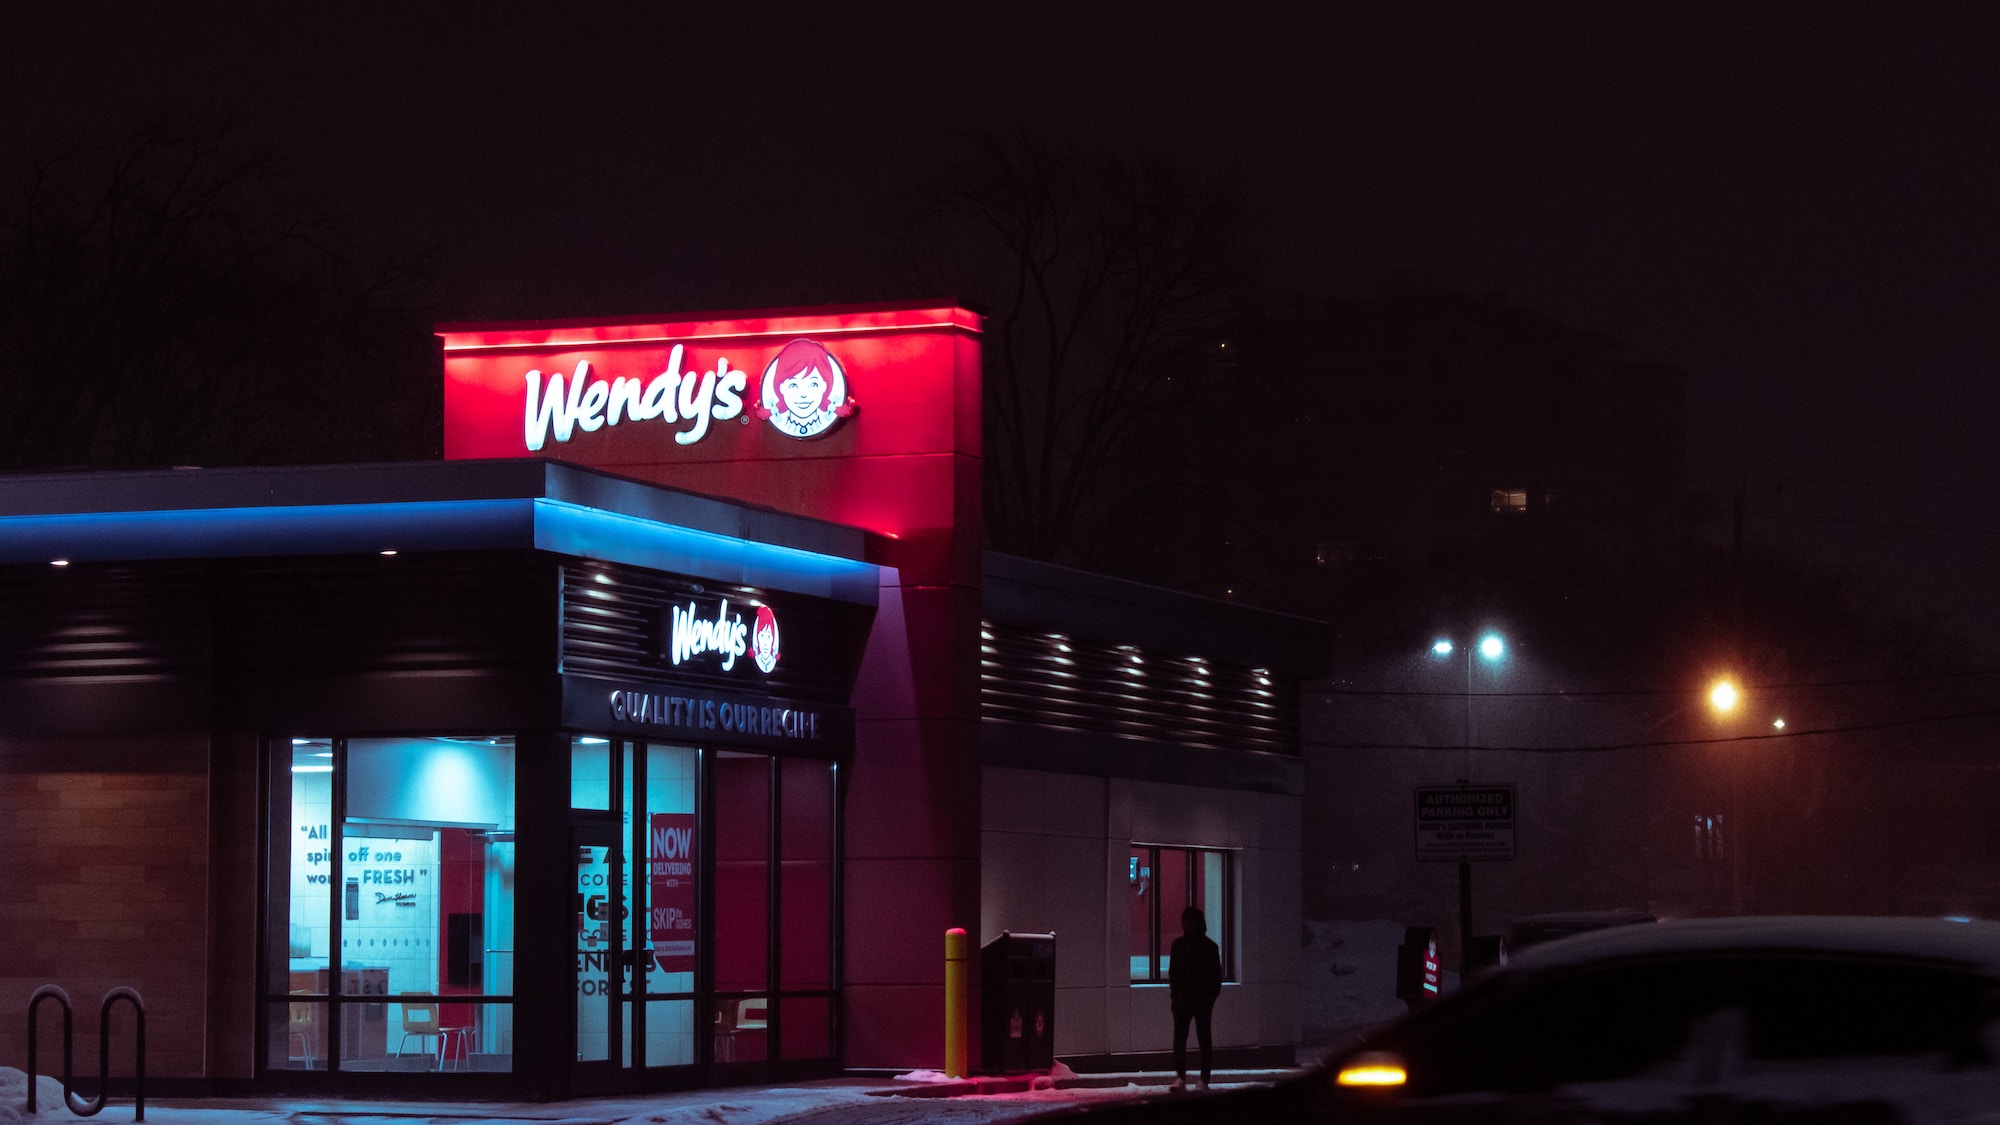 Wendy's chain restaurant at night.